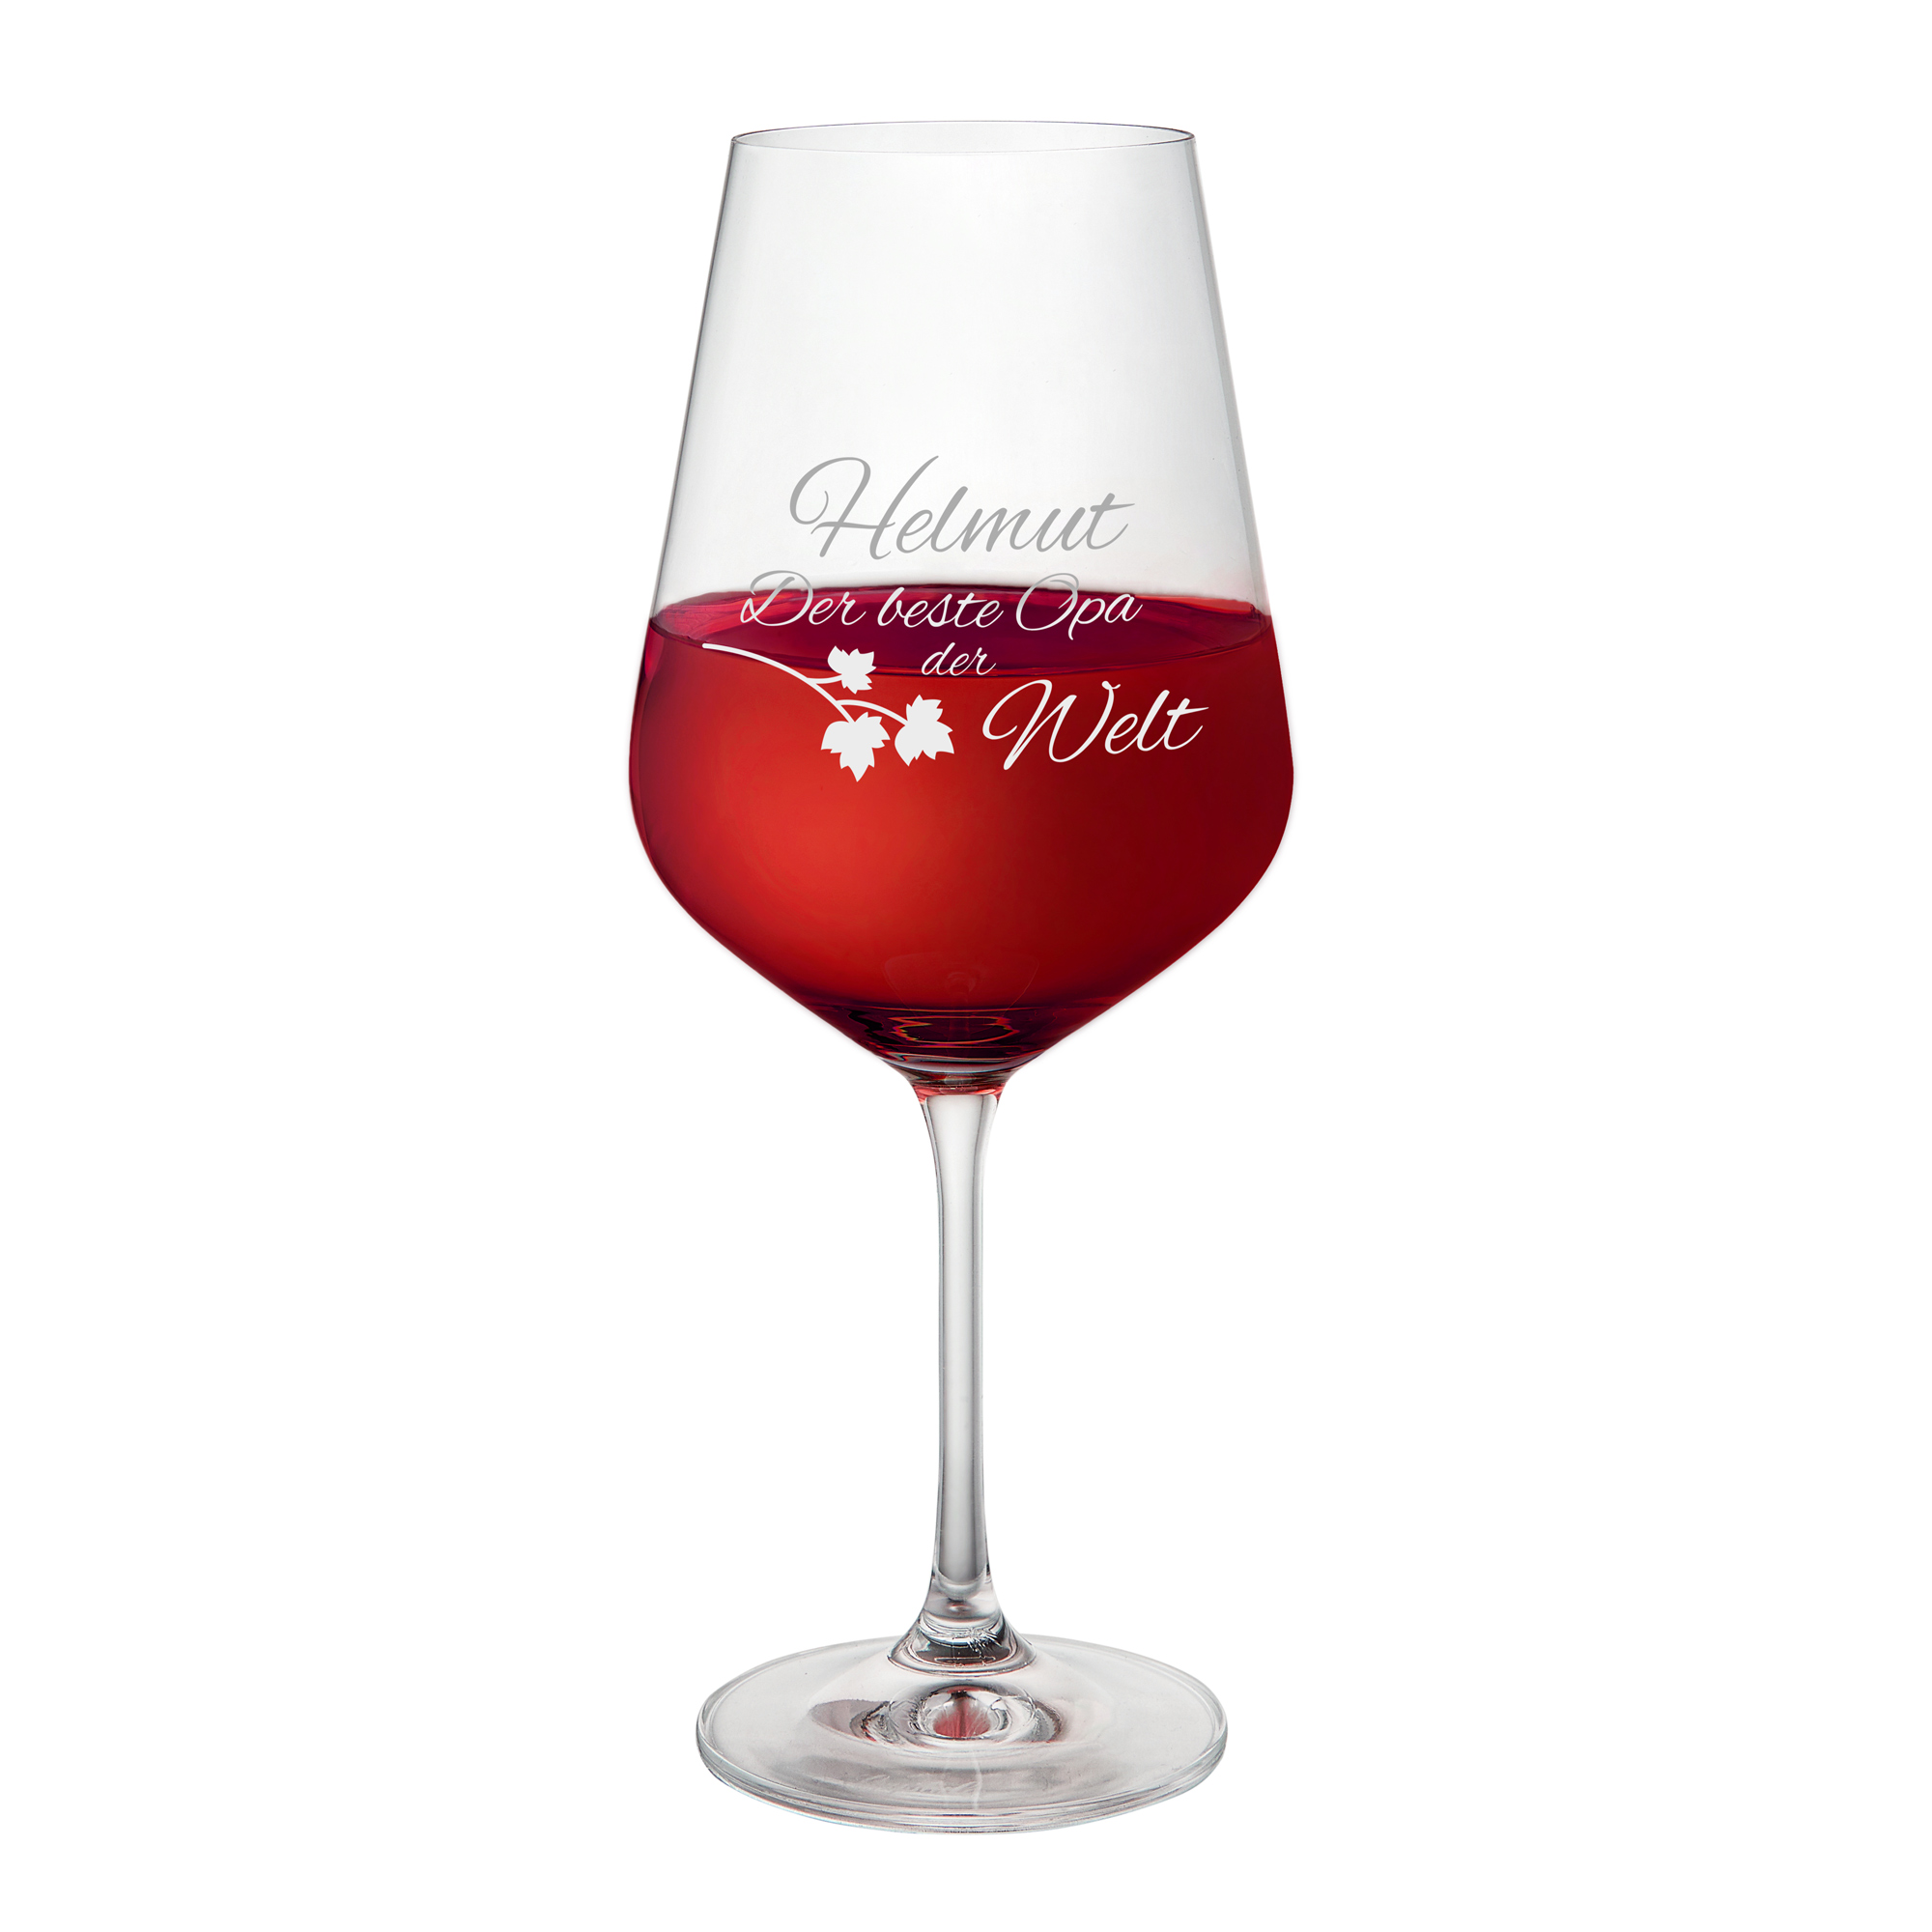 Rotweinglas mit Gravur - Bester Opa - Personalisiert, Rotweinglas mit Gravur - Bester Opa - Personalisiert, Gläser gravieren, Personalisierte Geschen